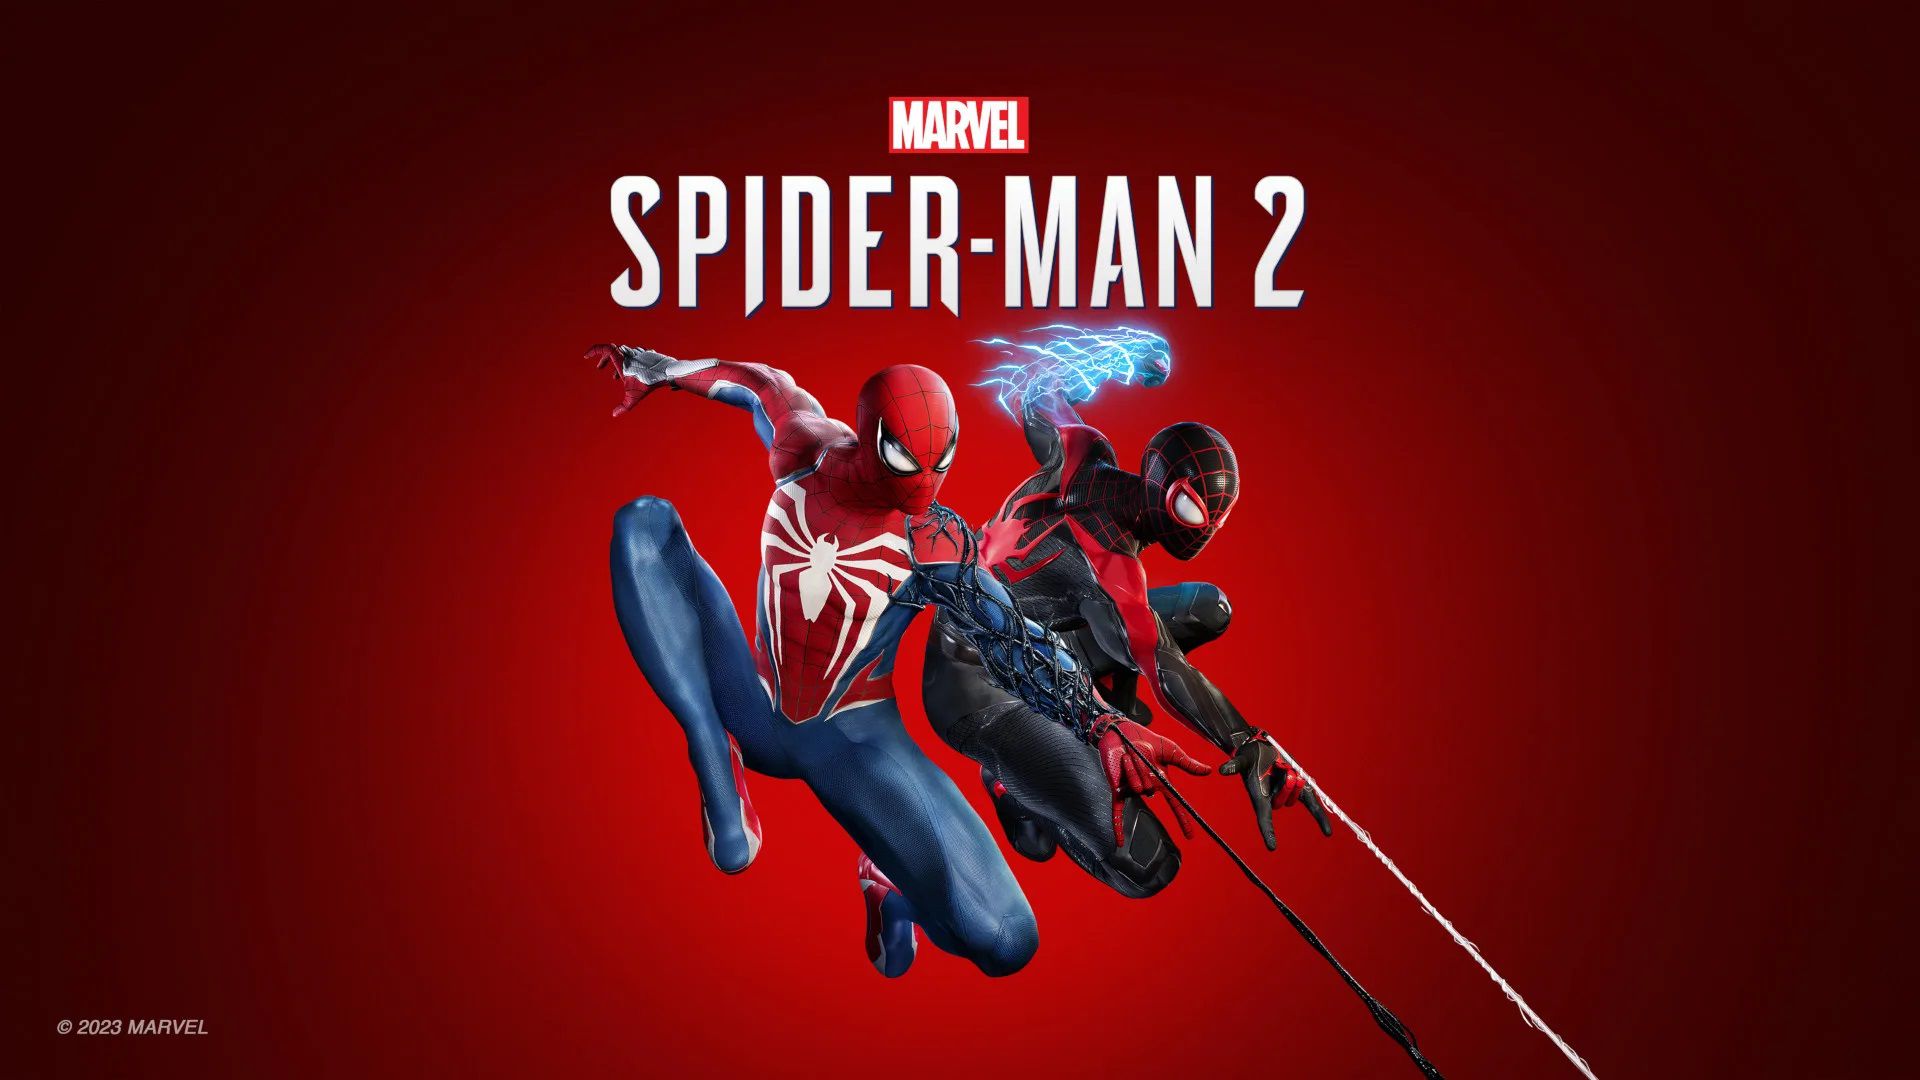 La title track di Marvel's Spider-Man 2, "Greater Together", è ora disponibile sulle principali piattaforme di streaming